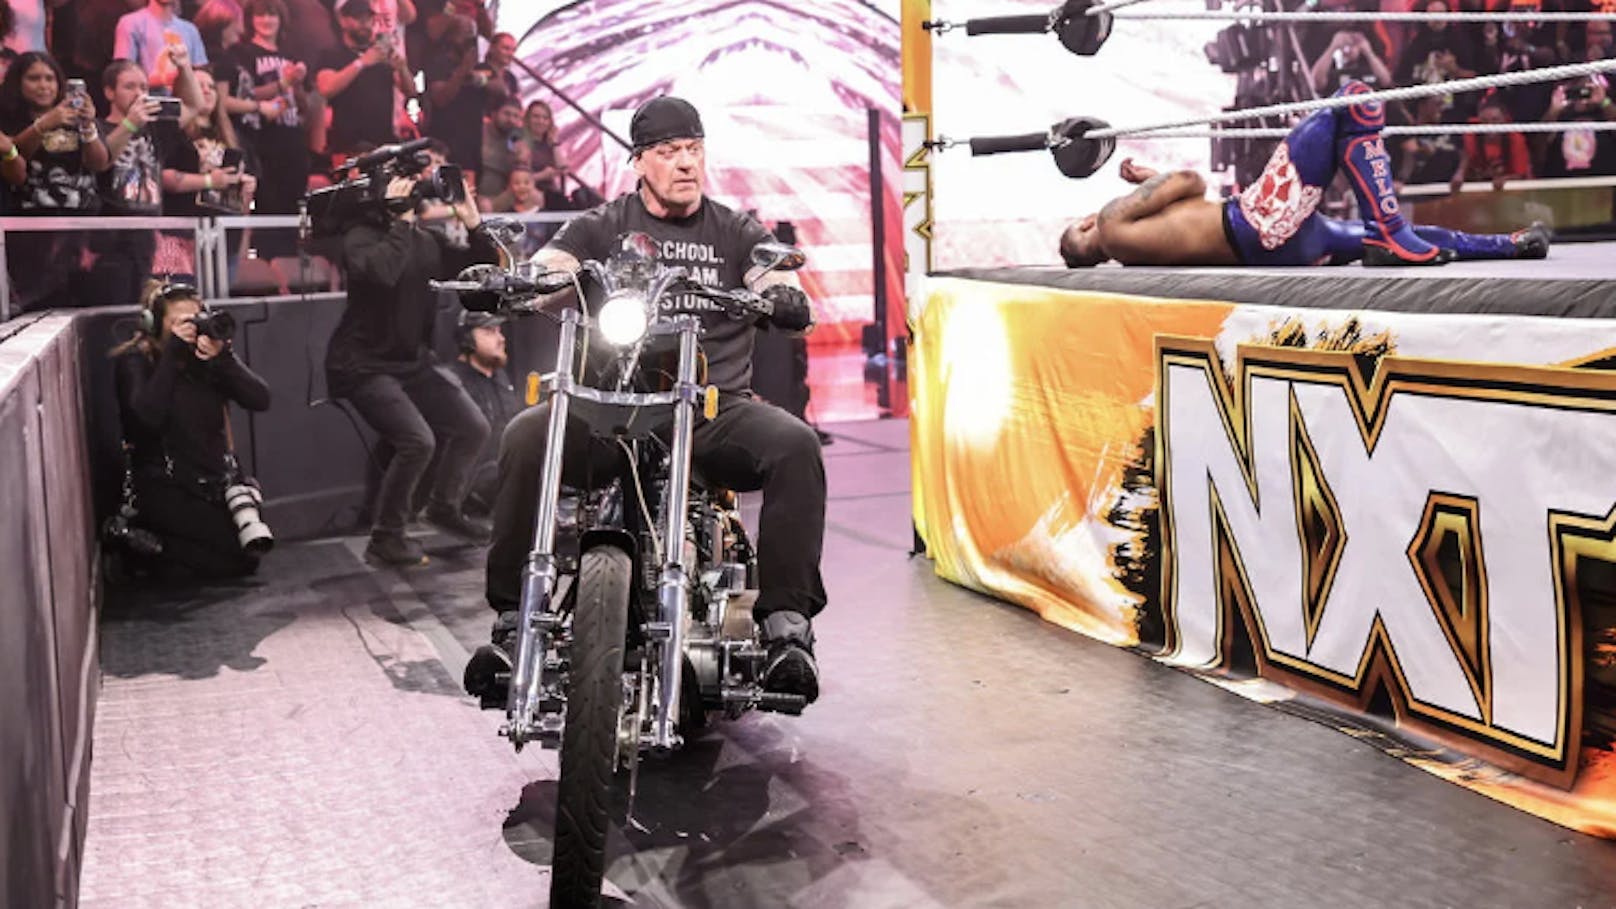 Edge bei AEW, WWE holt Undertaker aus Pension zurück